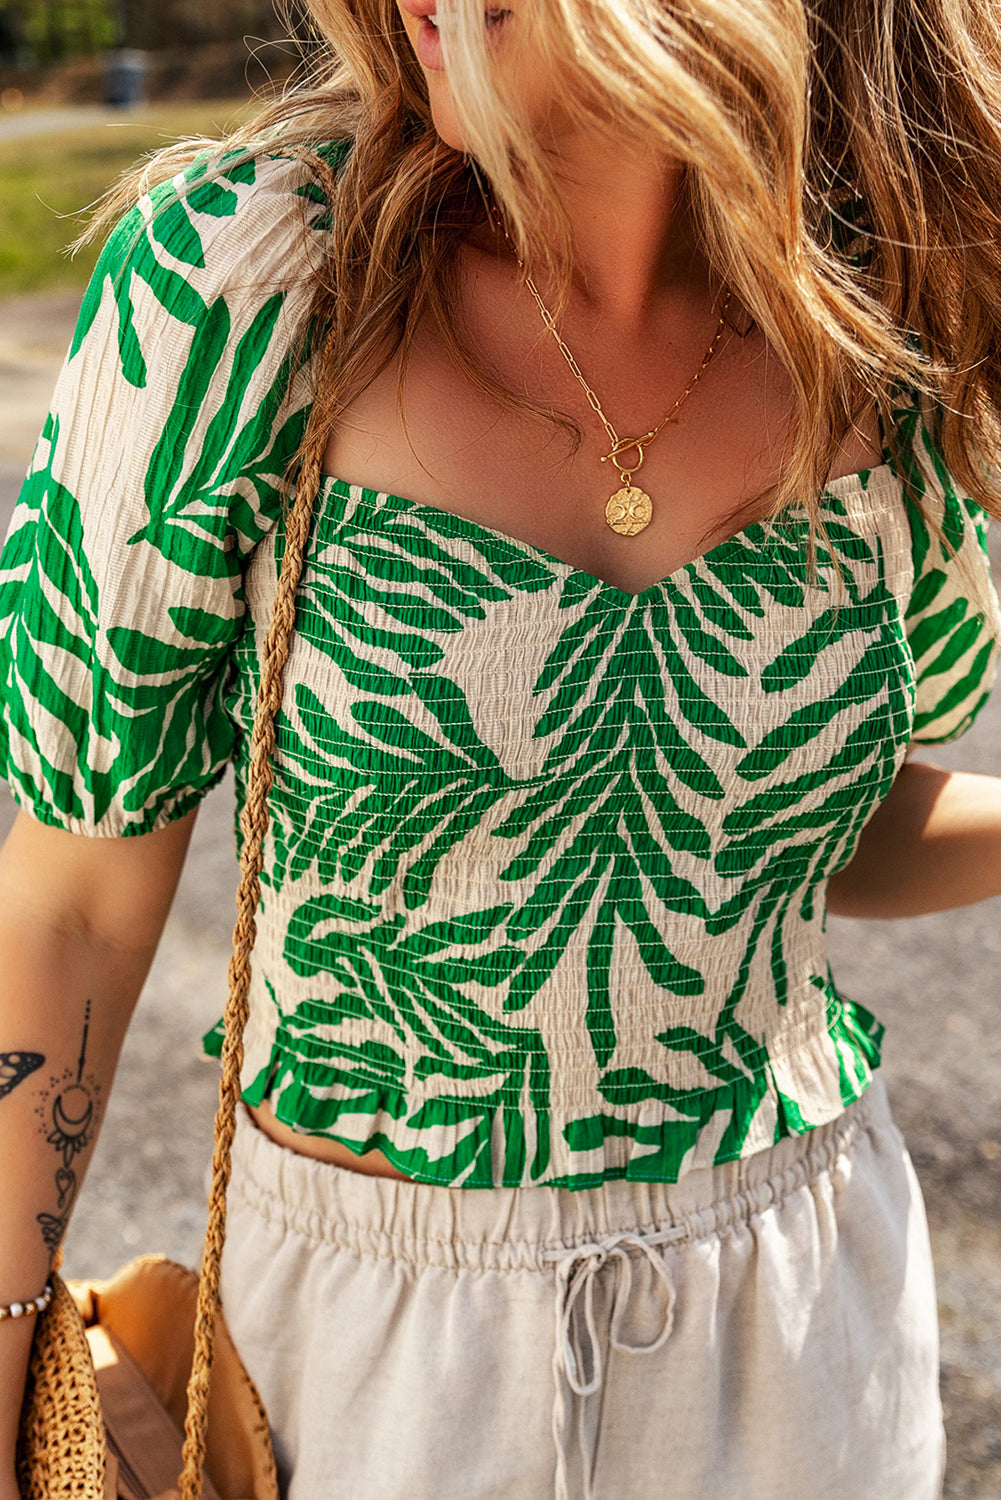 Temno zelena obrobljena majica s potiskom tropskih listov